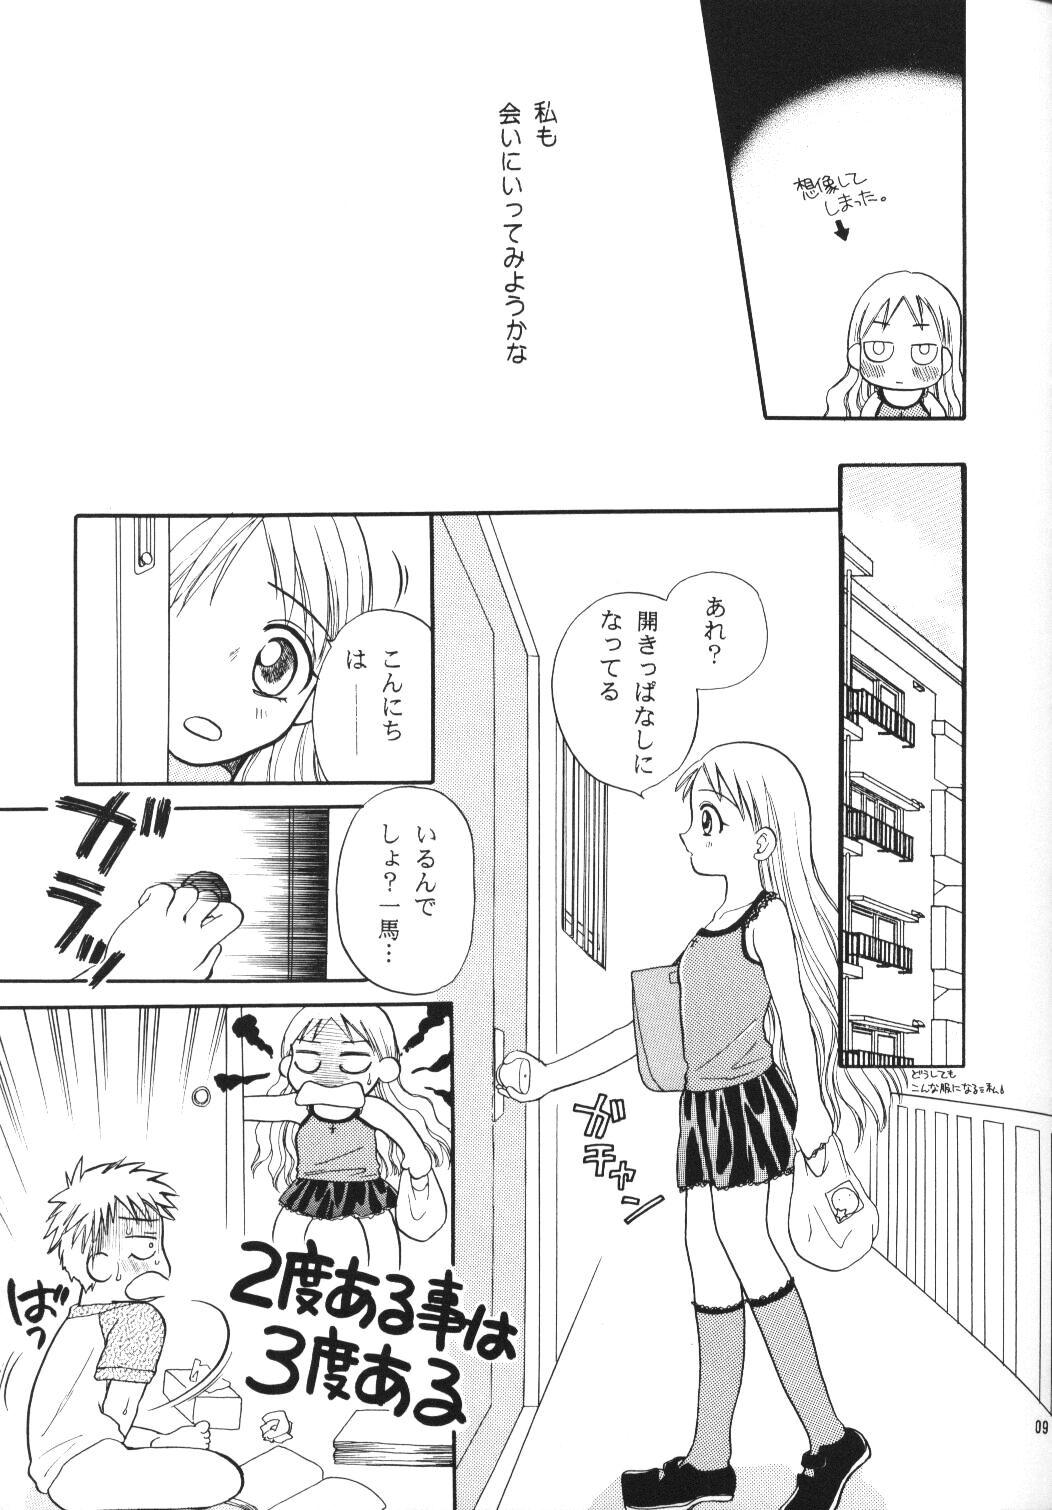 Whipping Tenshi no Girigiri - Kare kano Emo - Page 8